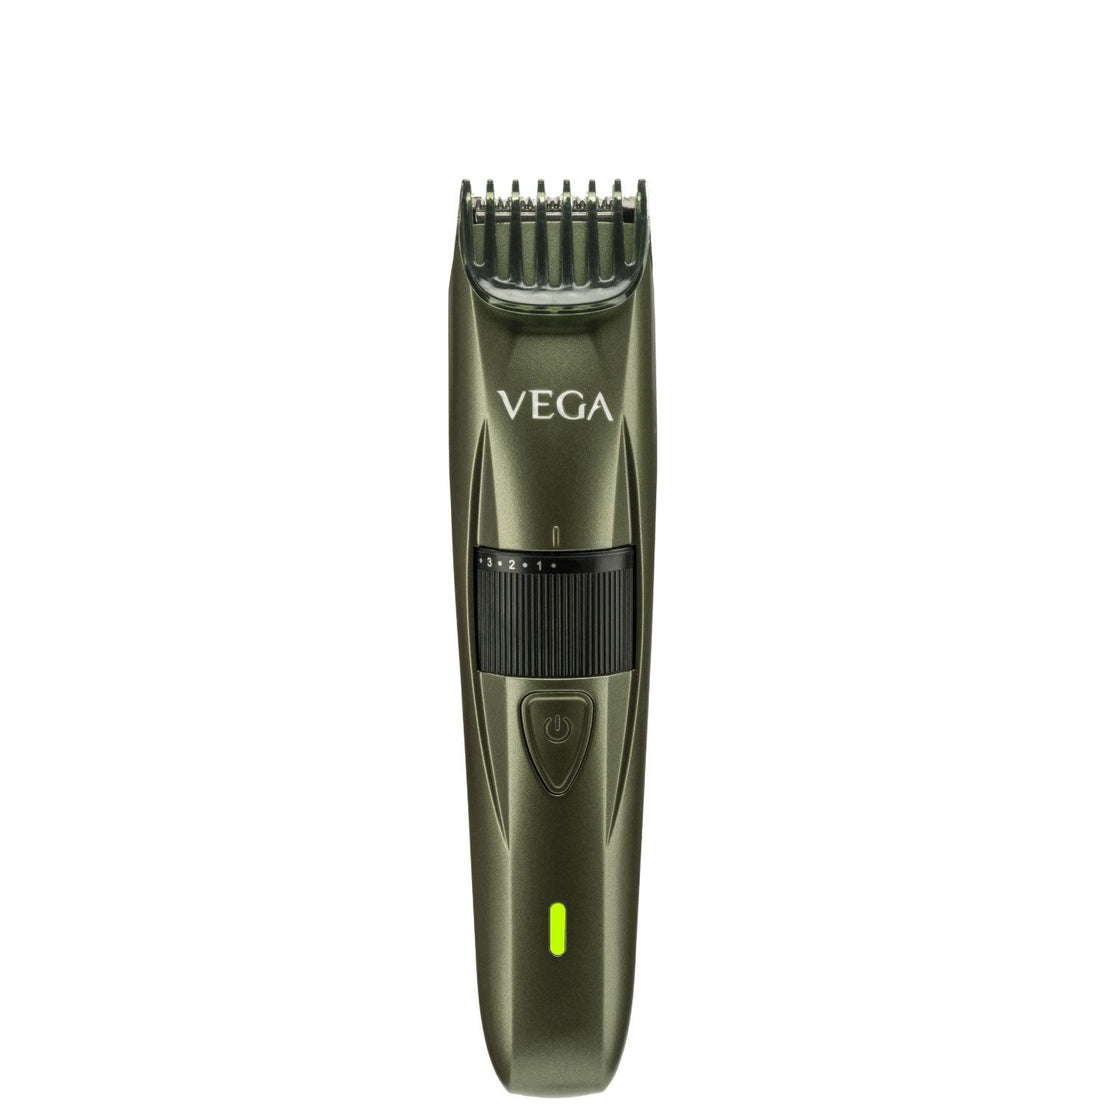 Vega Power Series P-1 Beard Trimmer For Men - Green (Vhth-25)-2